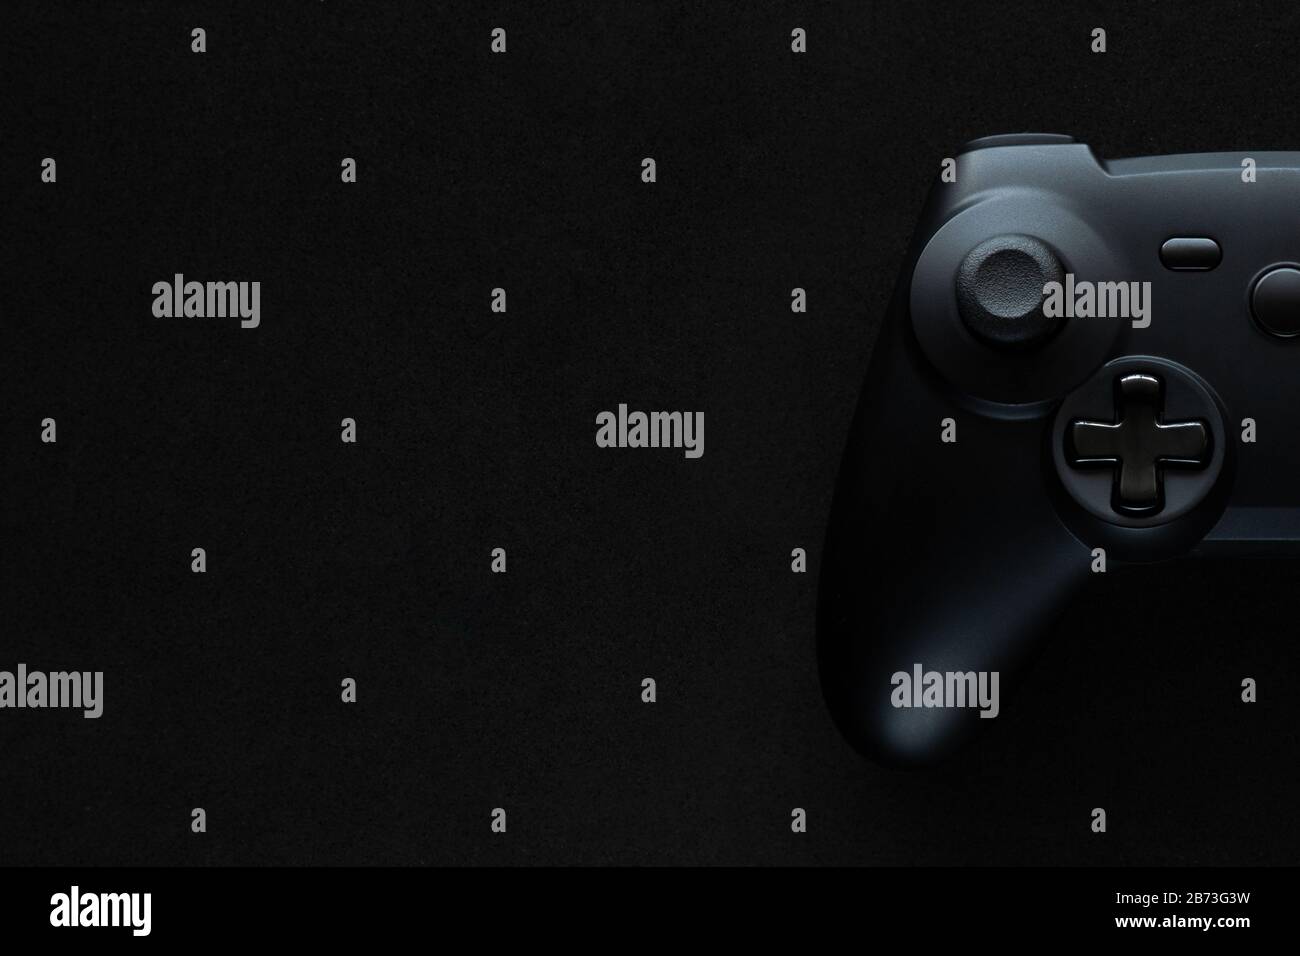 Stock-Foto eines schwarzen Gamepads auf einem texturierten schwarzen Hintergrund und Kopierbereich auf der linken Seite Stockfoto